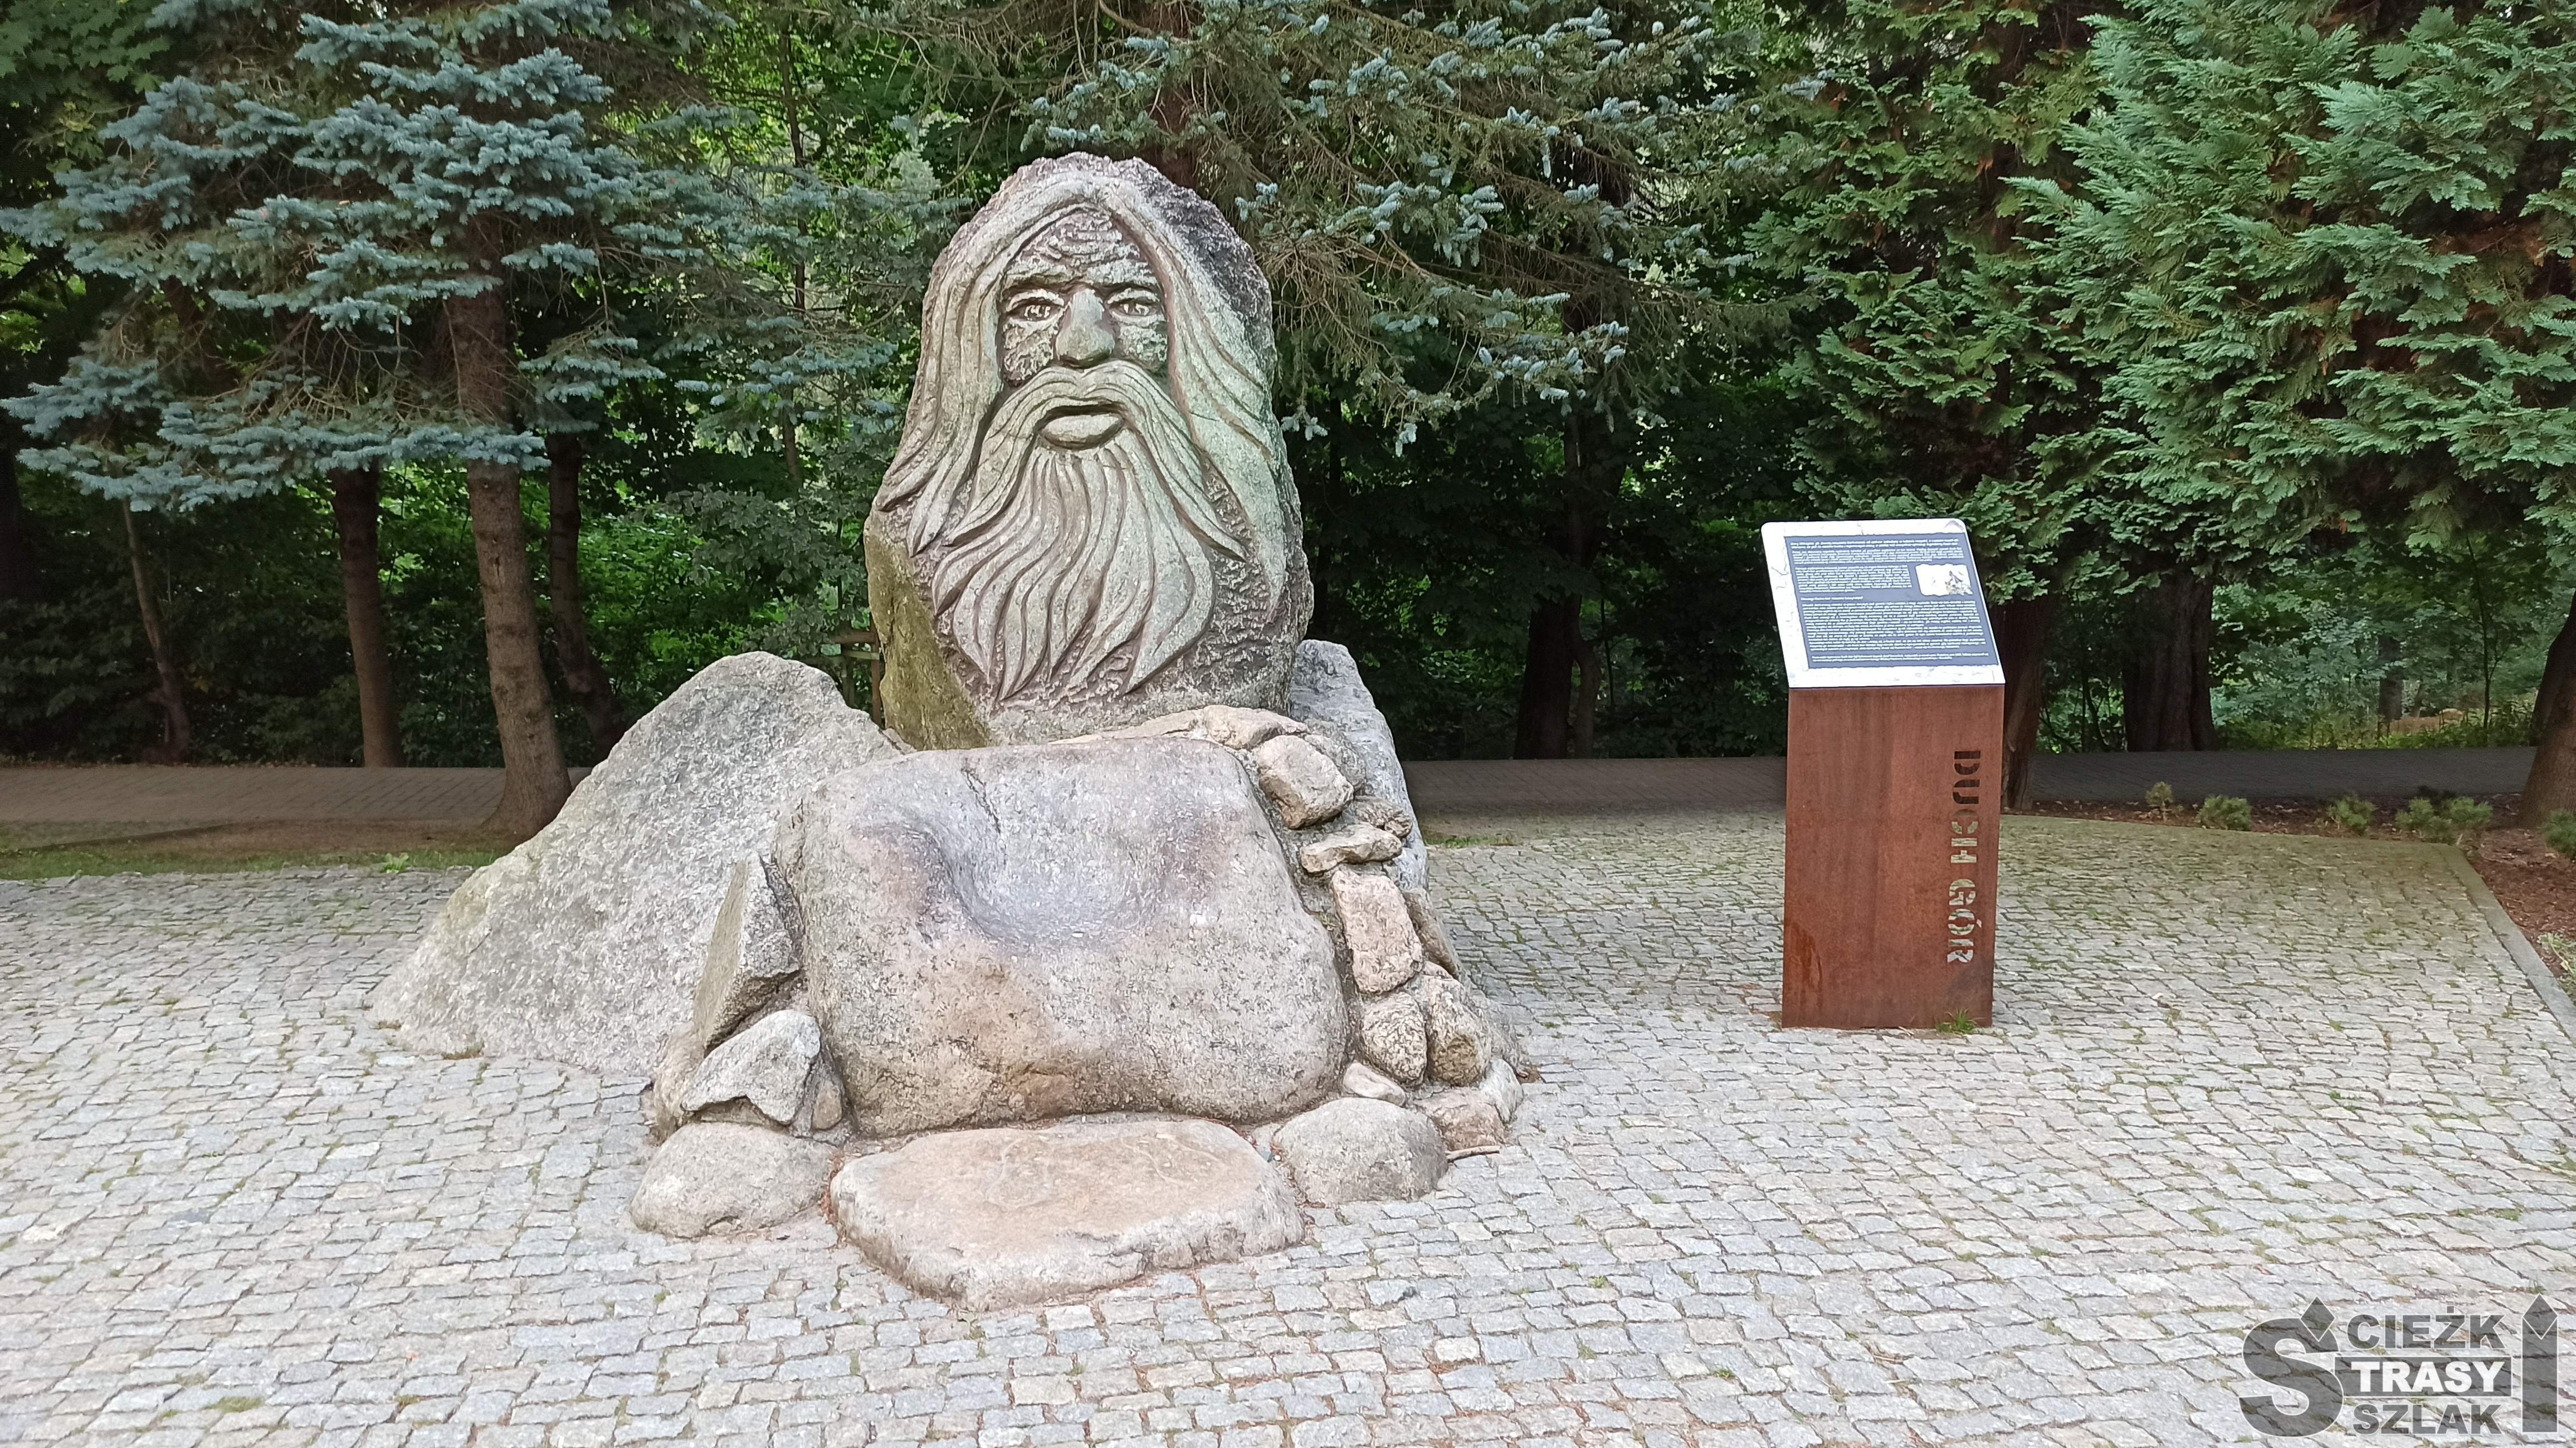 Wysoki kamienny pomnik przypominający postać Ducha Gór postawiony w parku miejsckim w Karpaczu